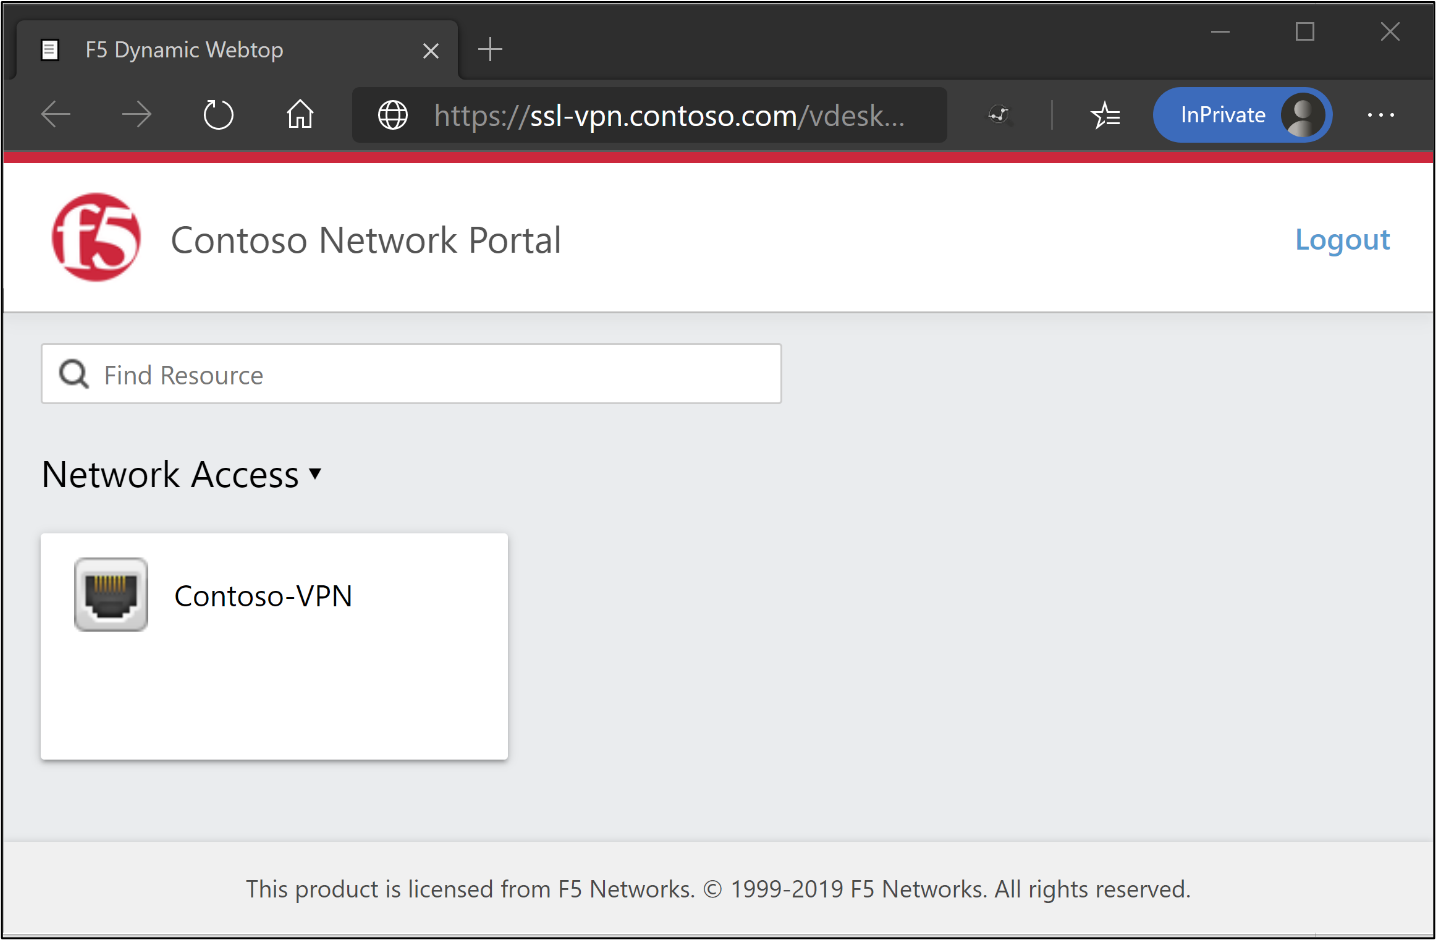 Schermopname van de pagina Contoso Network Portal met netwerktoegangsindicator.